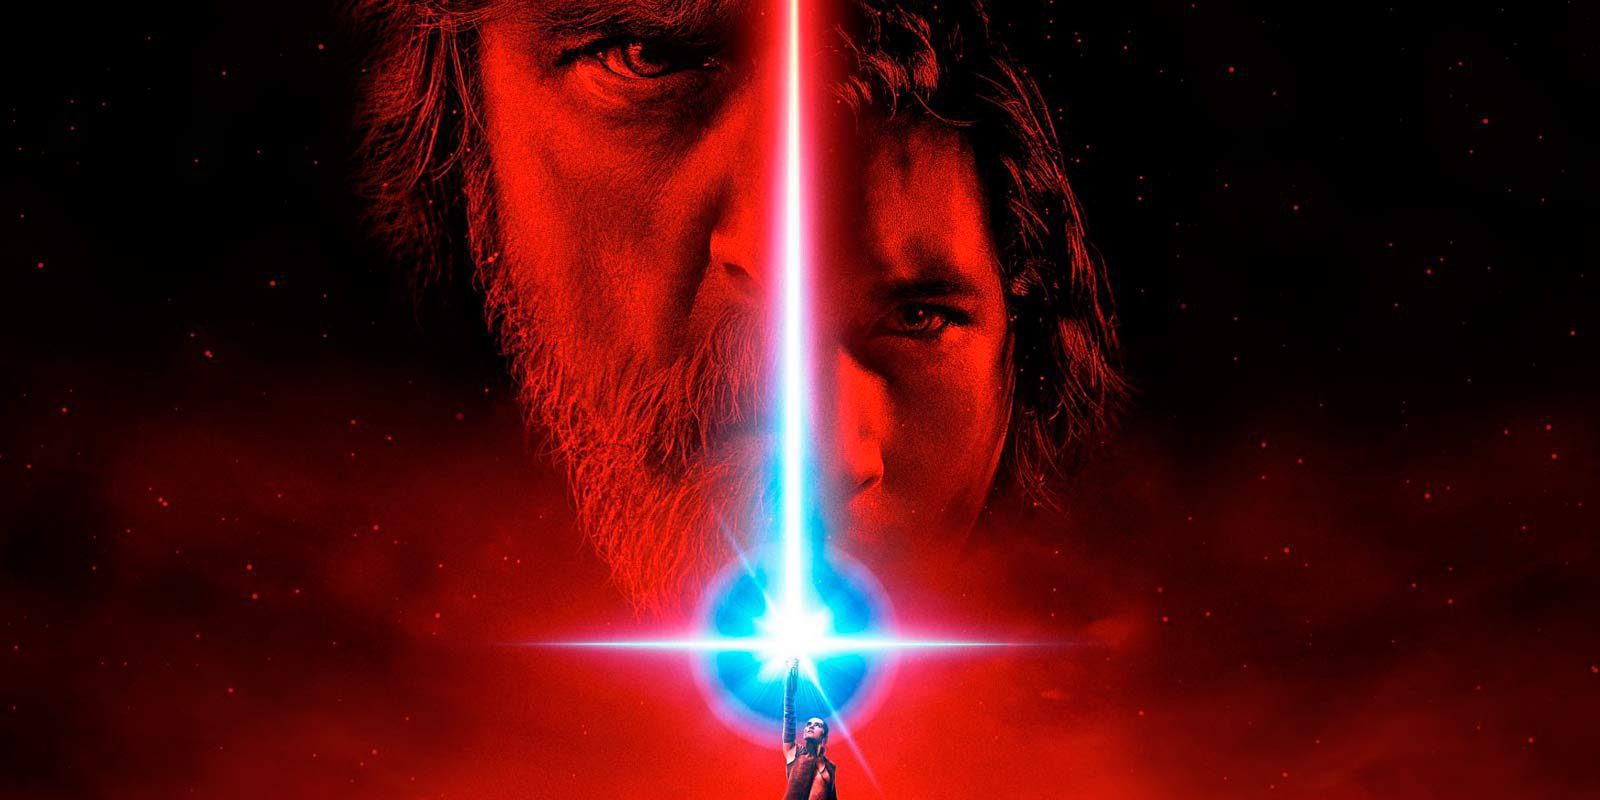 Ponen a la venta un supuesto guion auténtico de 'Star Wars: Los últimos Jedi'